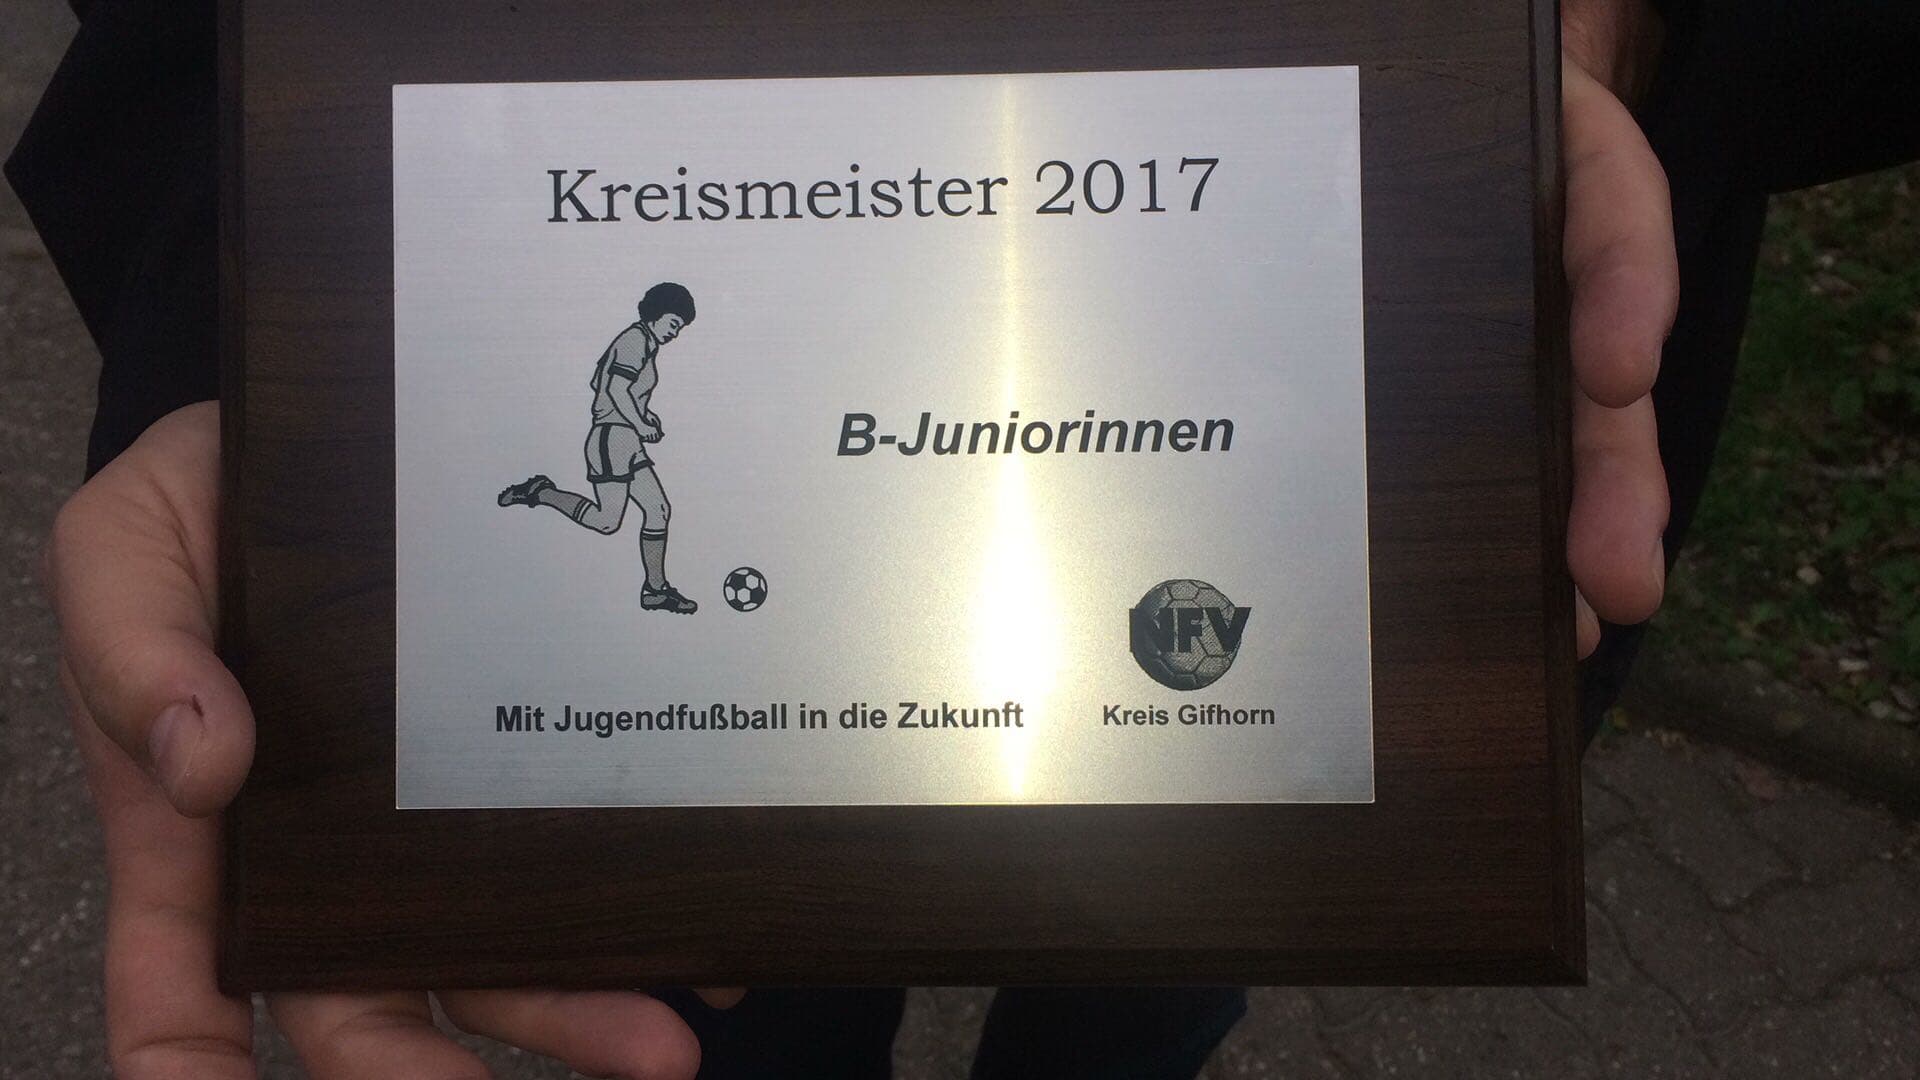 B-Juniorinnen des SV Steinhorst Kreismeister 2017